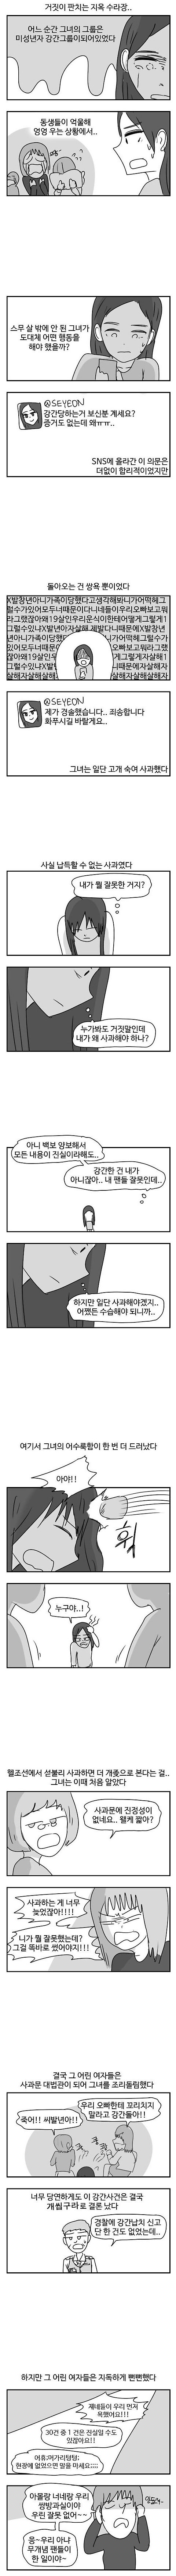 [유머]대한민국에서 섣불리 사과하면 안되는 이유